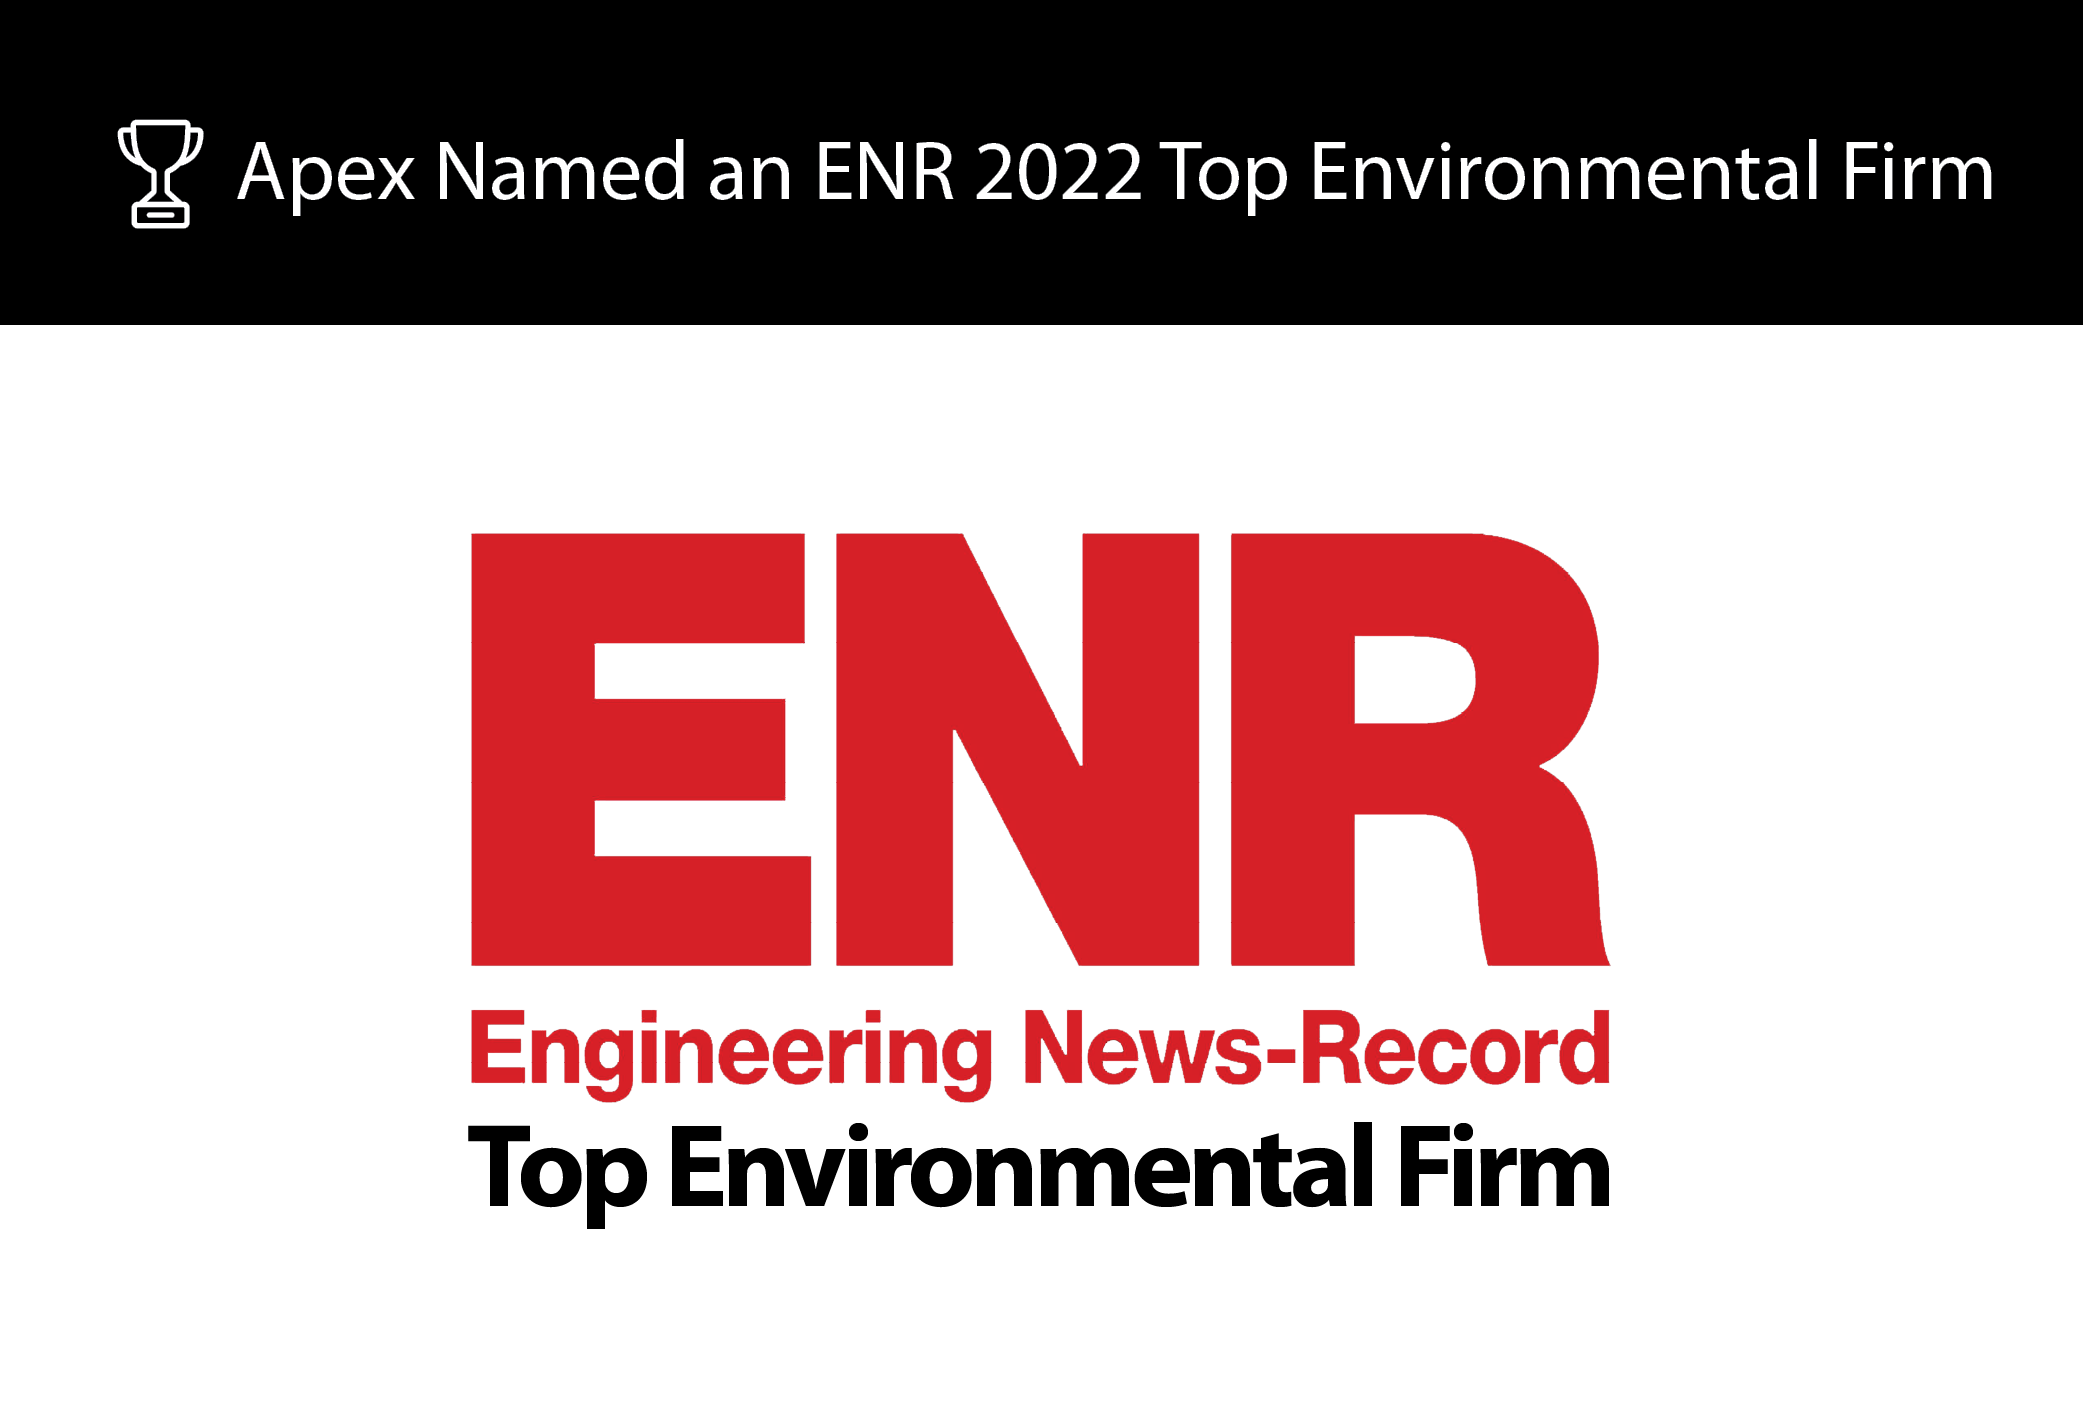 Apex Companies named an ENR 2022 Top 30 All-Environmental Firm